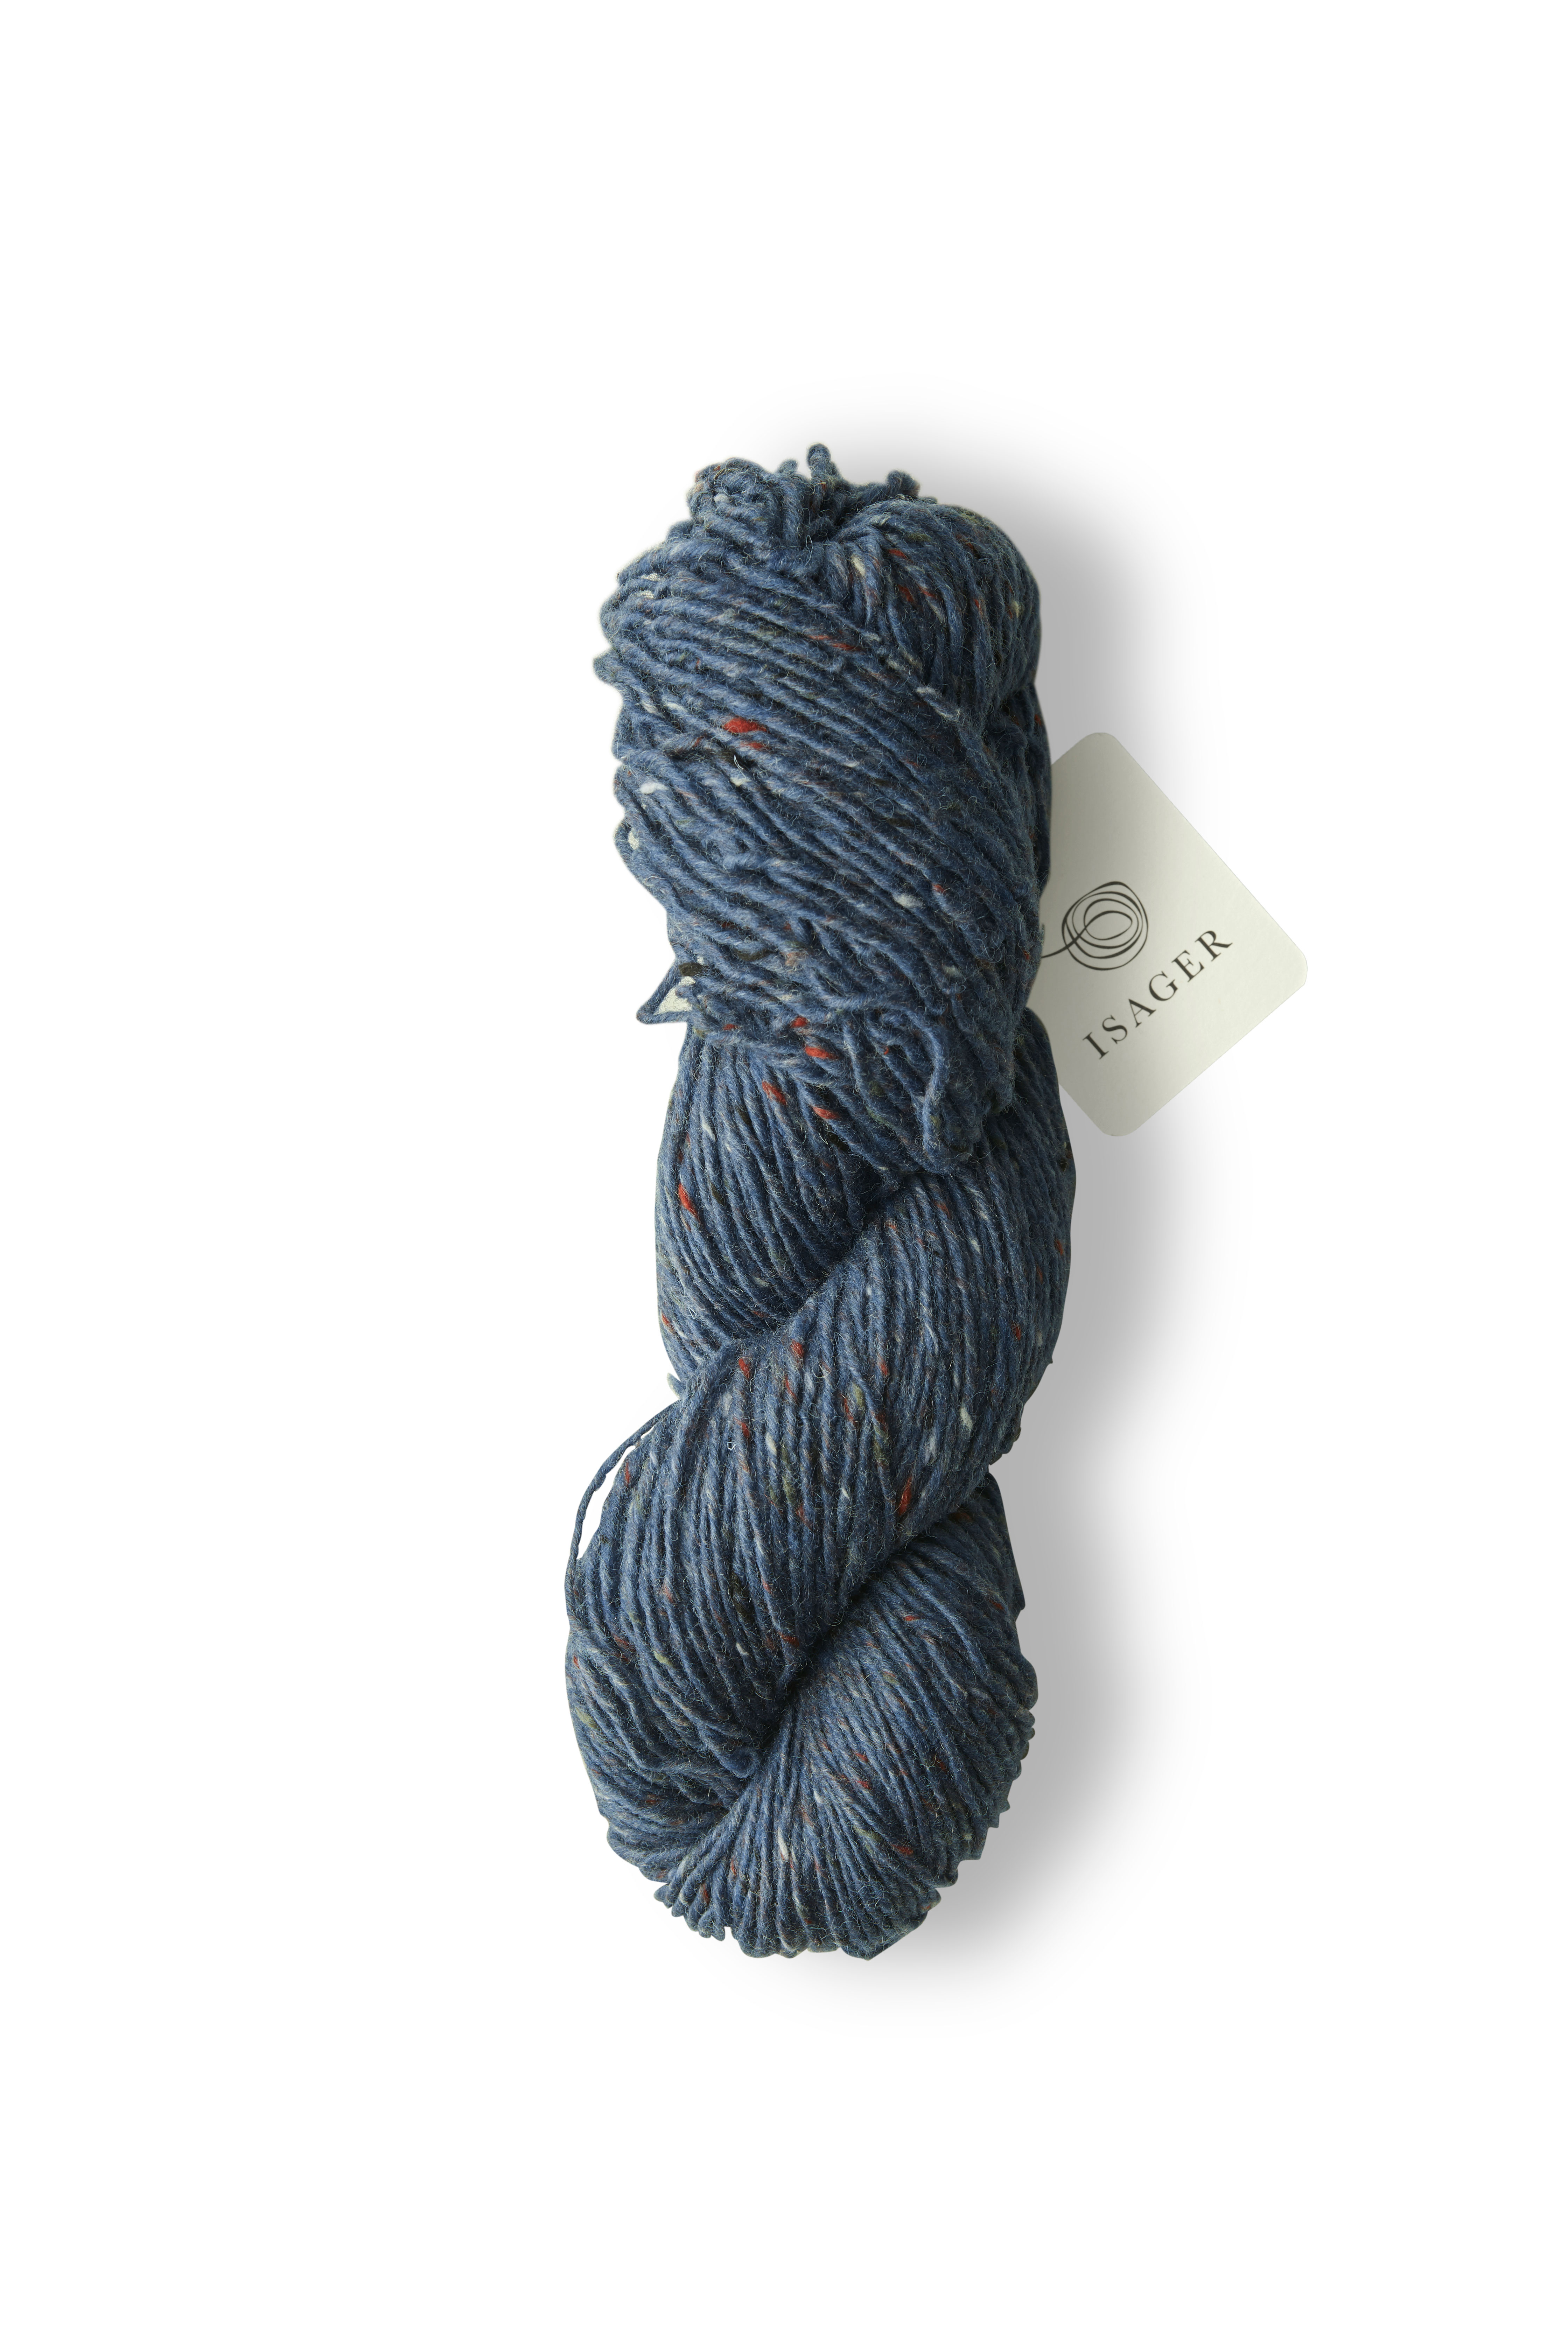 Aran Tweed - blau / Blue